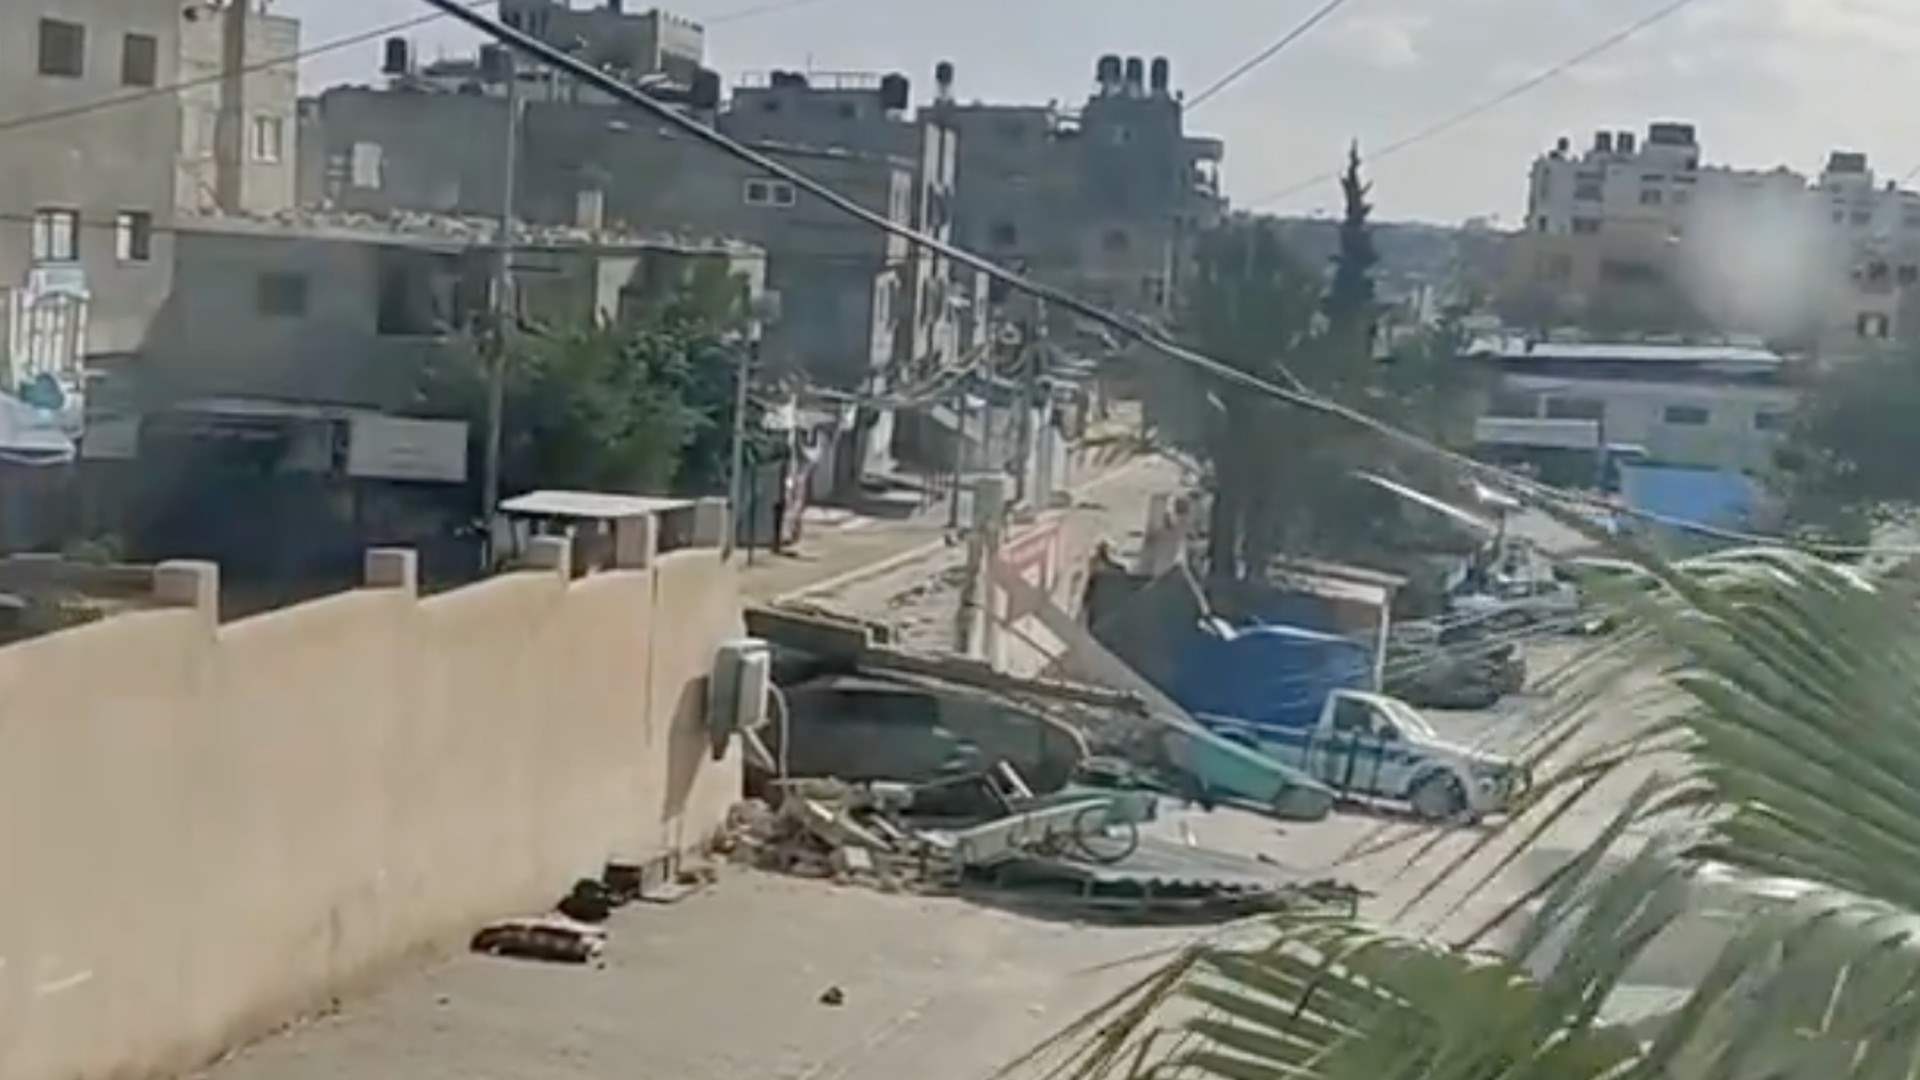 Four Palestinians die due to oxygen depletion after Israel raids Nasser Hospital